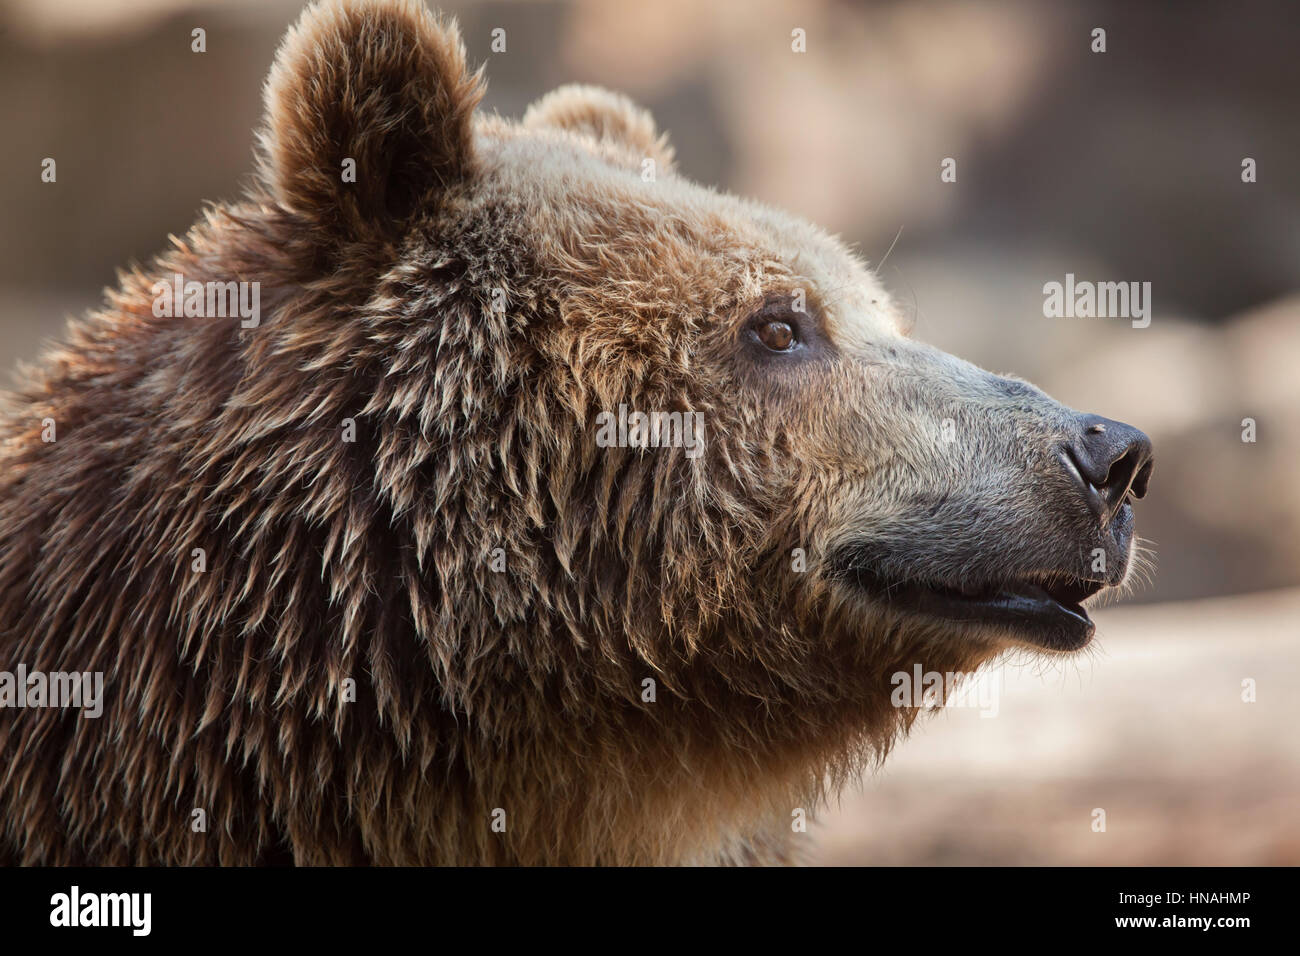 Eurasian brown bear (Ursus arctos arctos), also known as the European brown bear. Stock Photo